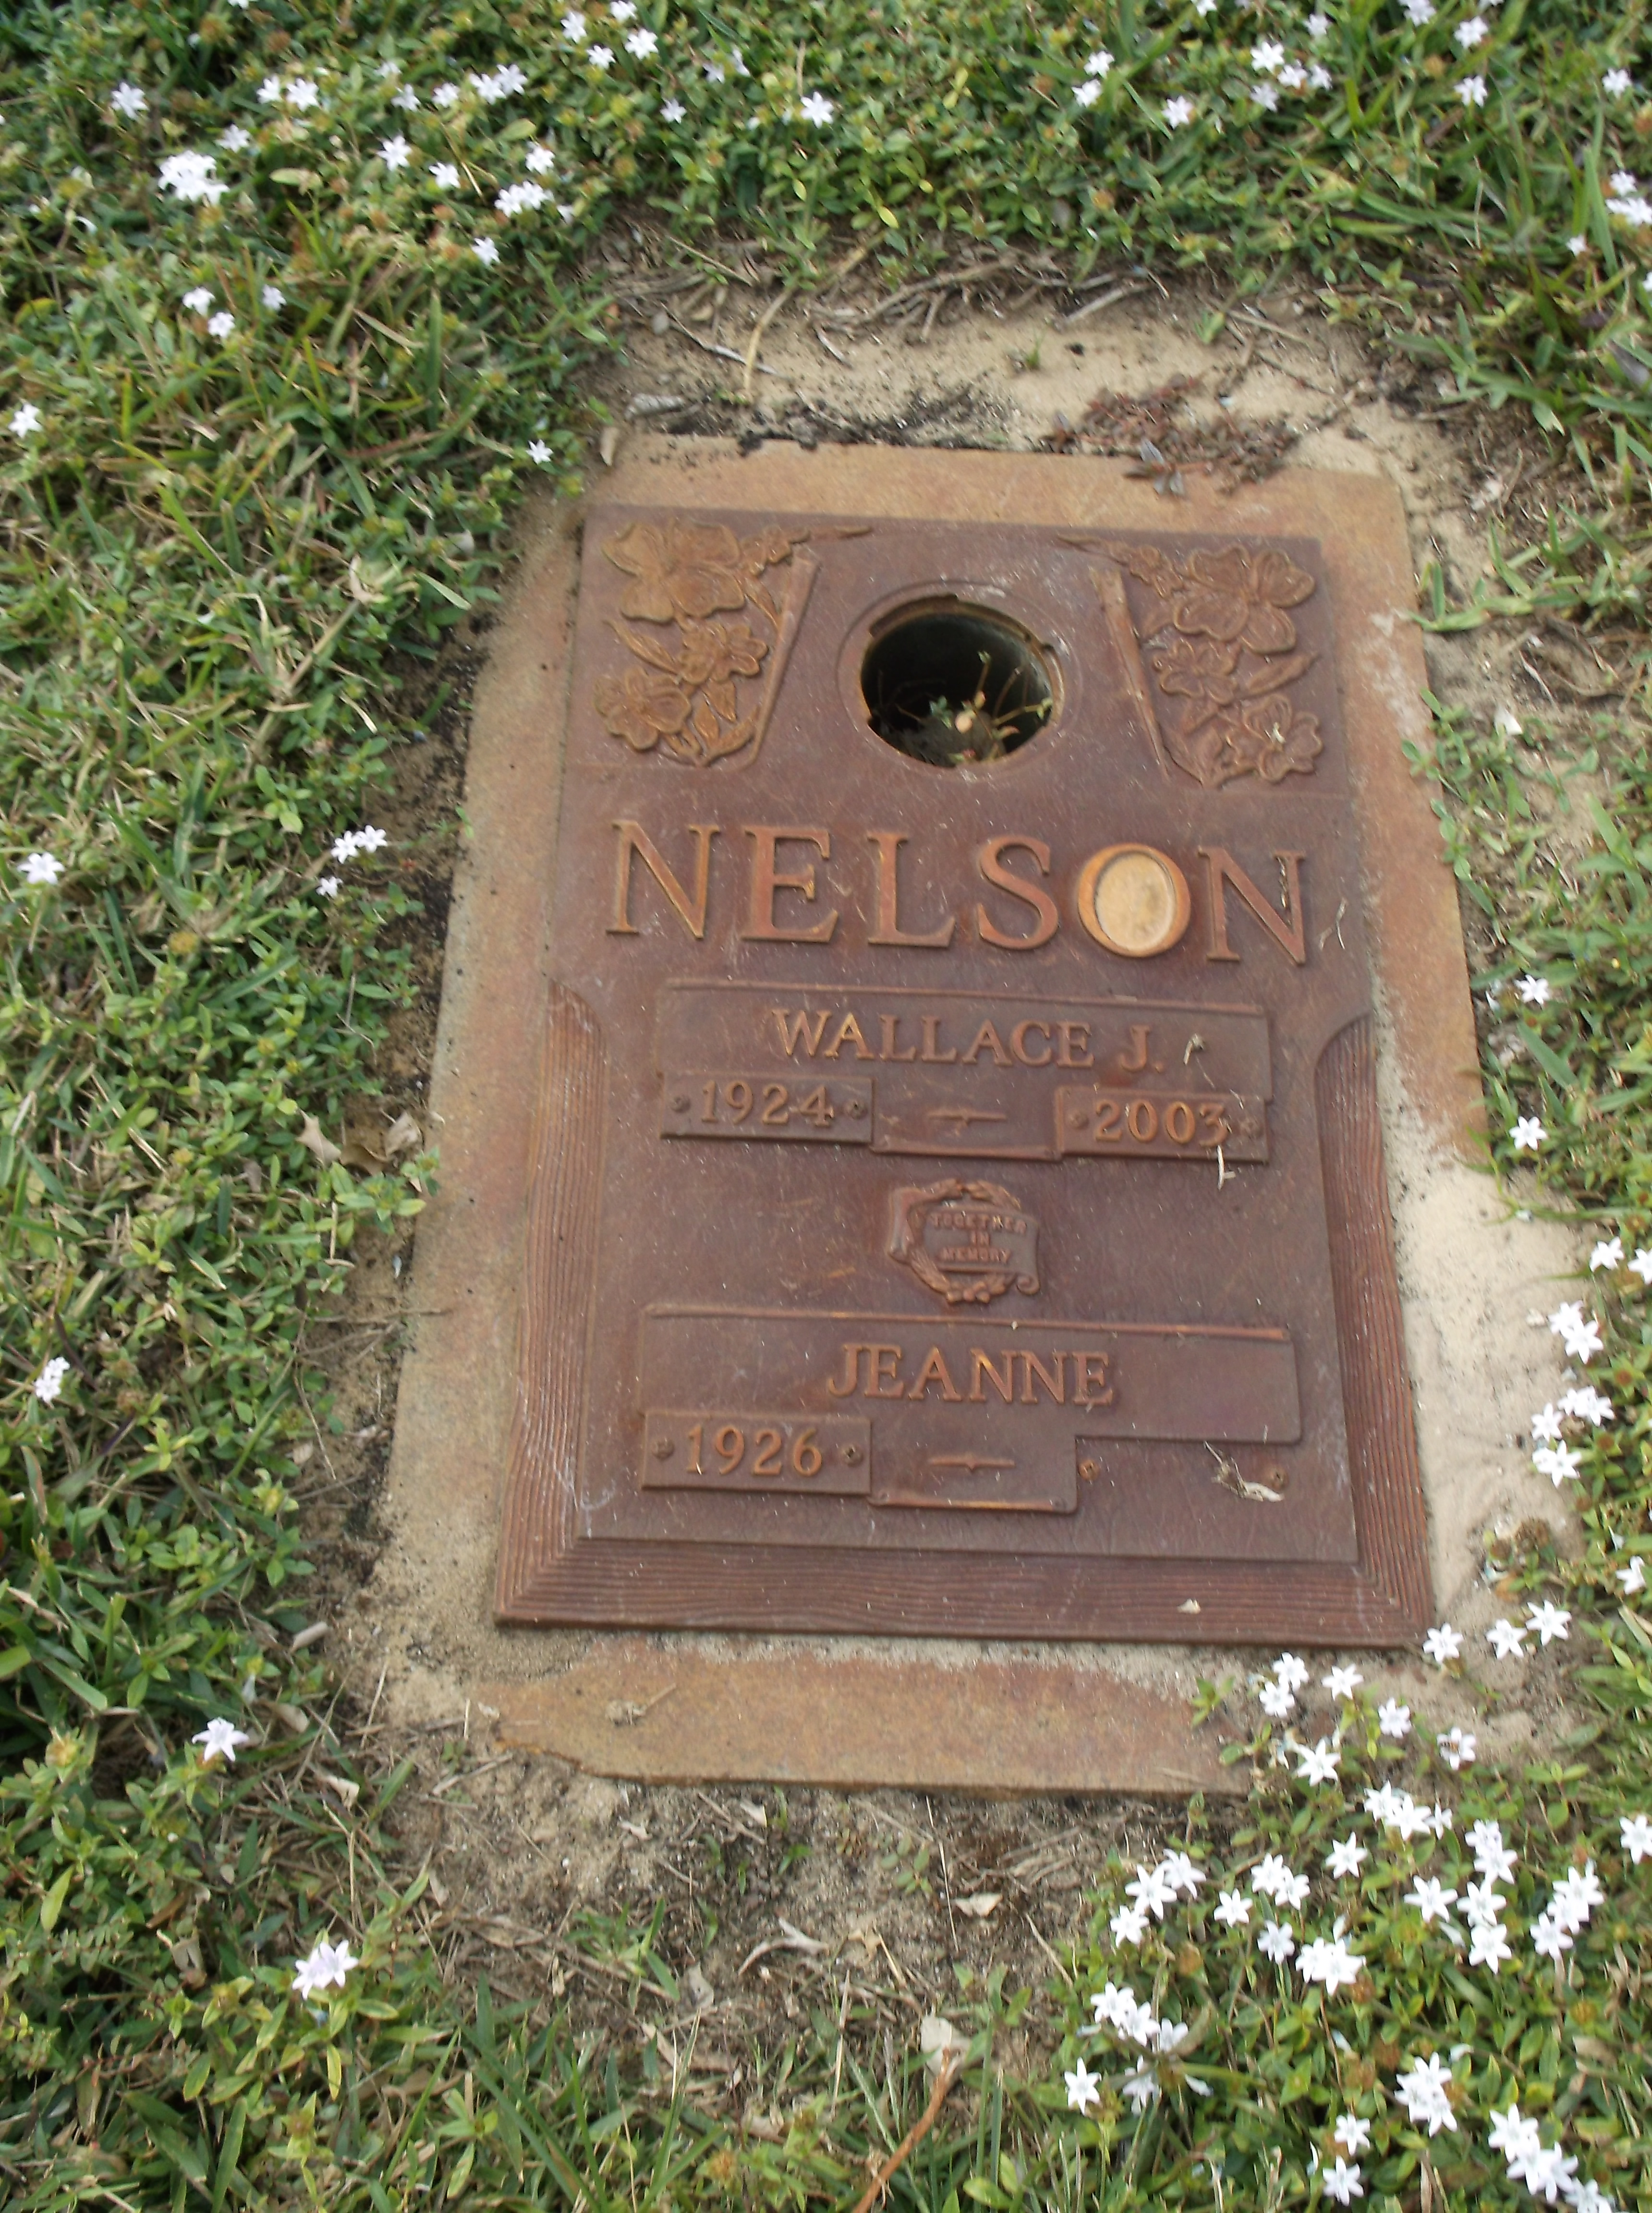 Jeanne Nelson